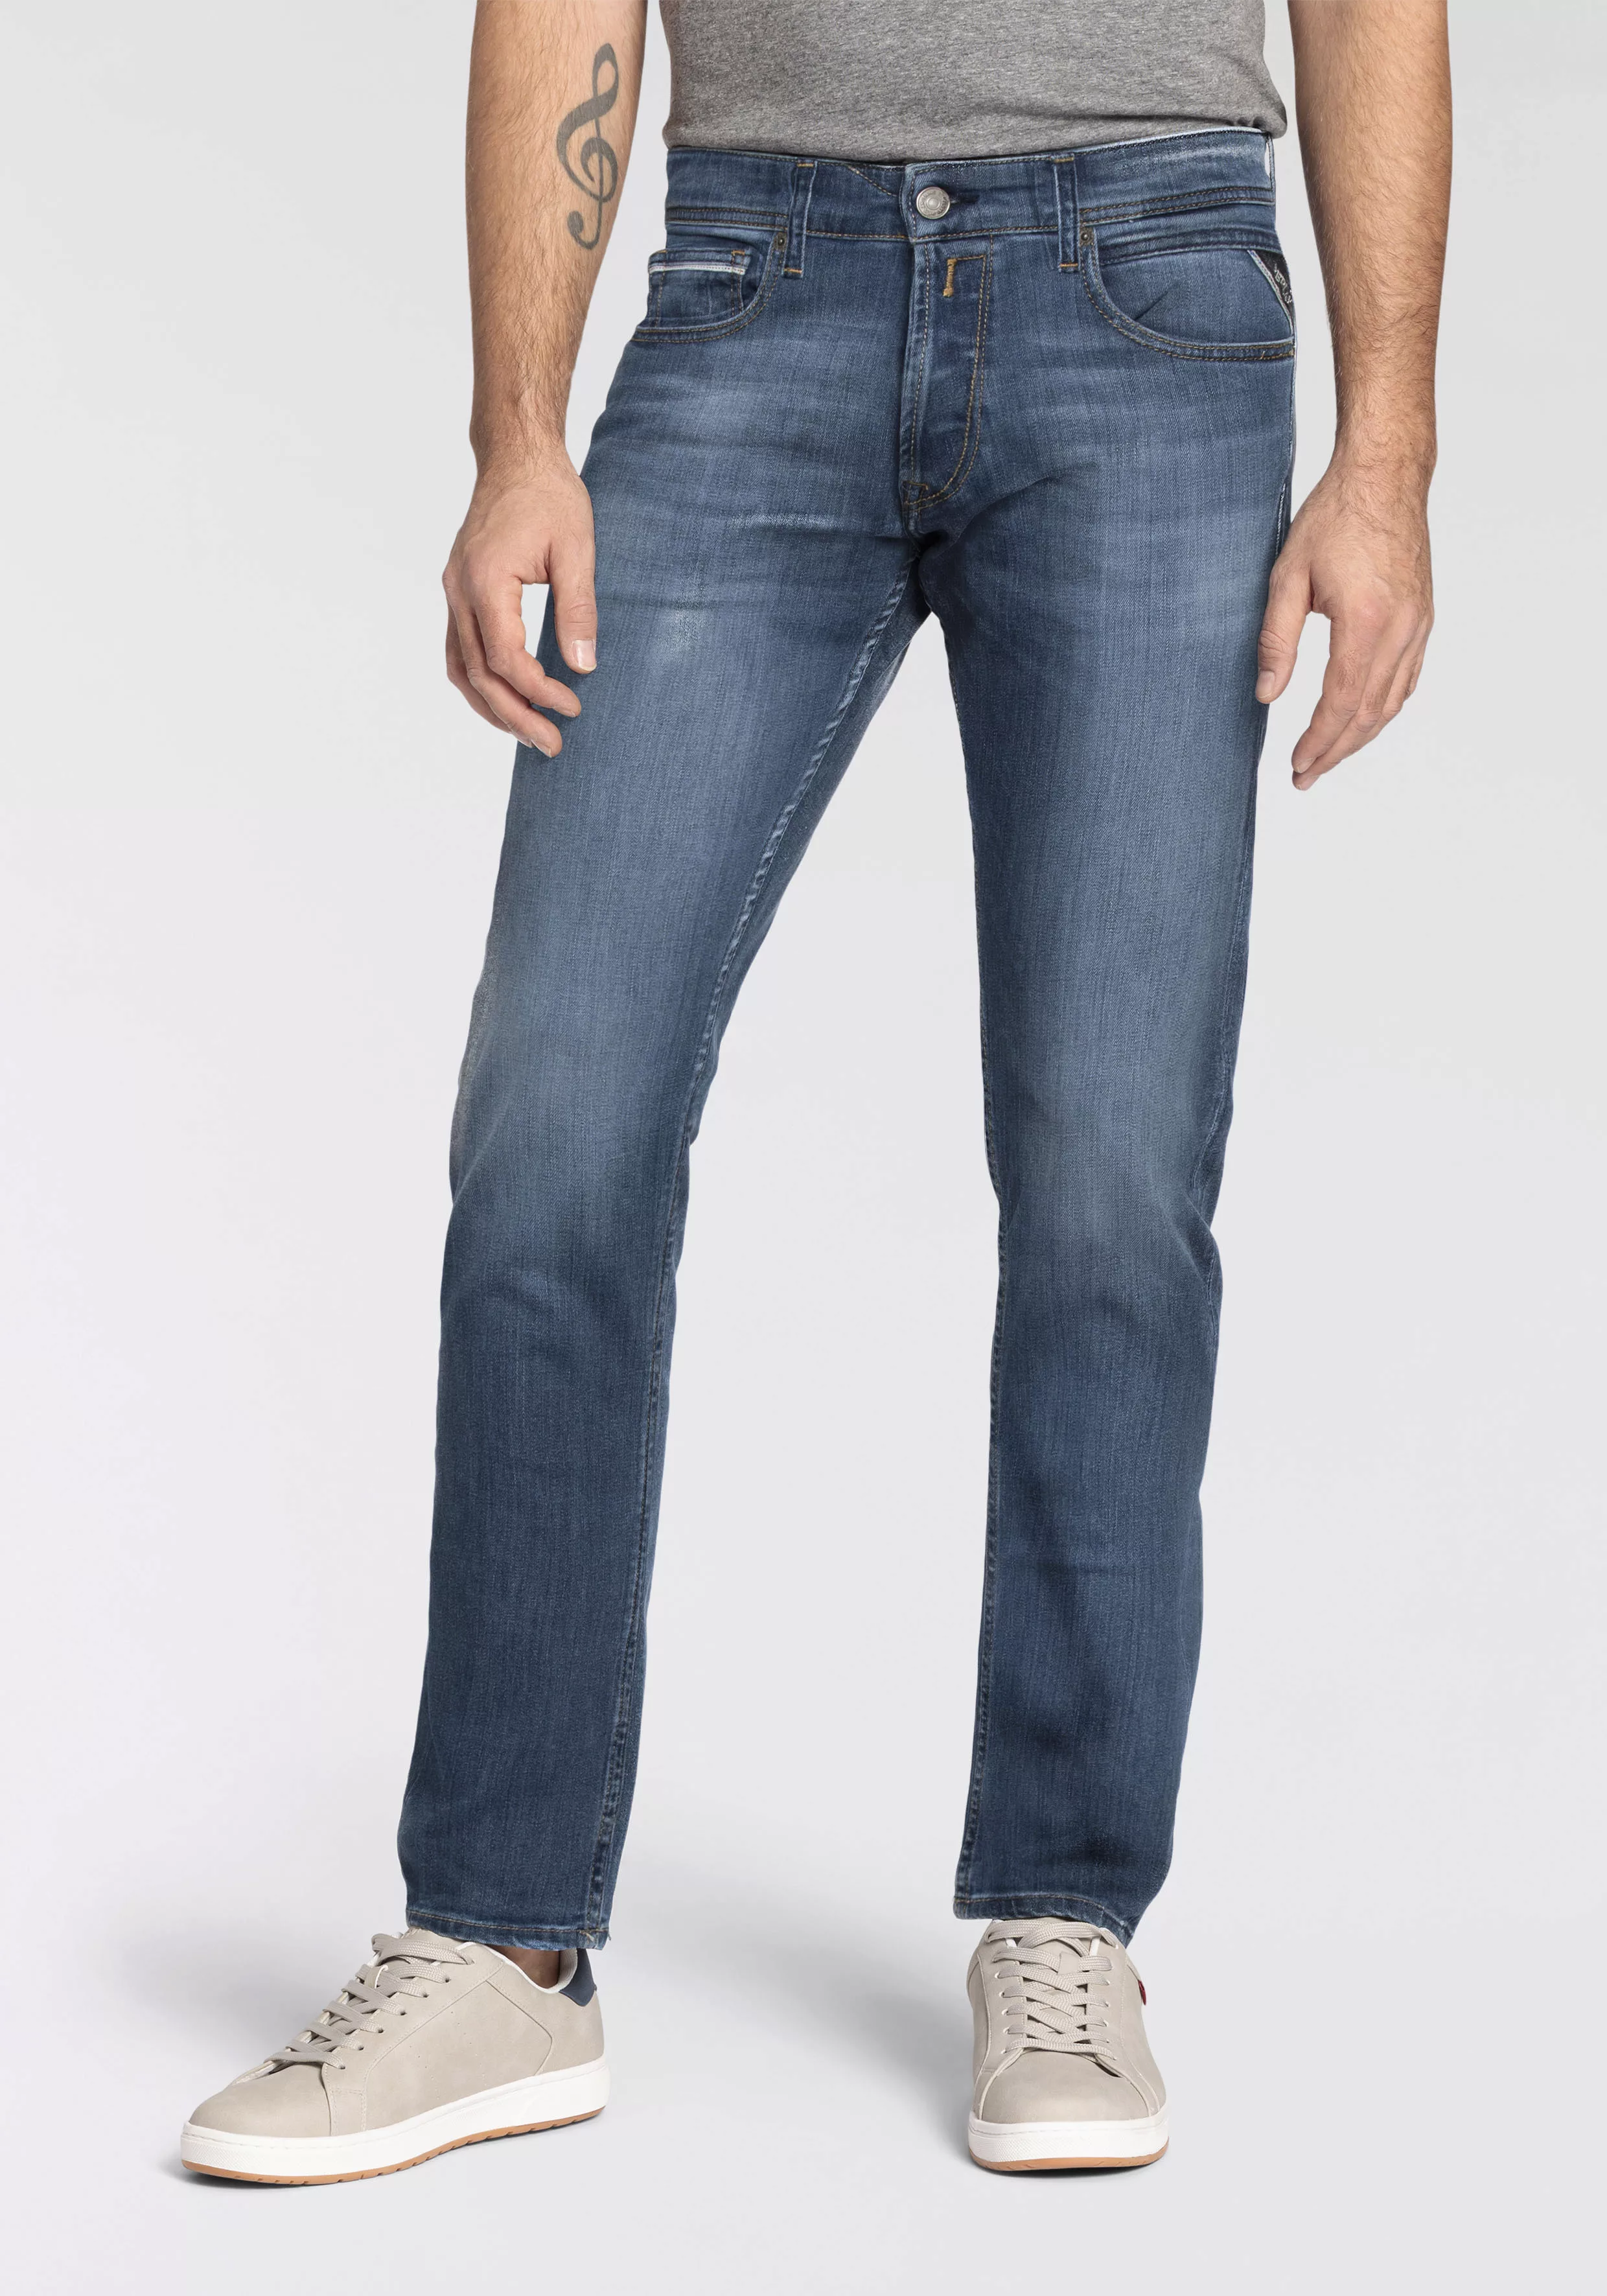 Replay Herren Jeans GROVER Straight Fit - Slim Leg - Blau - Medium Blue Den günstig online kaufen